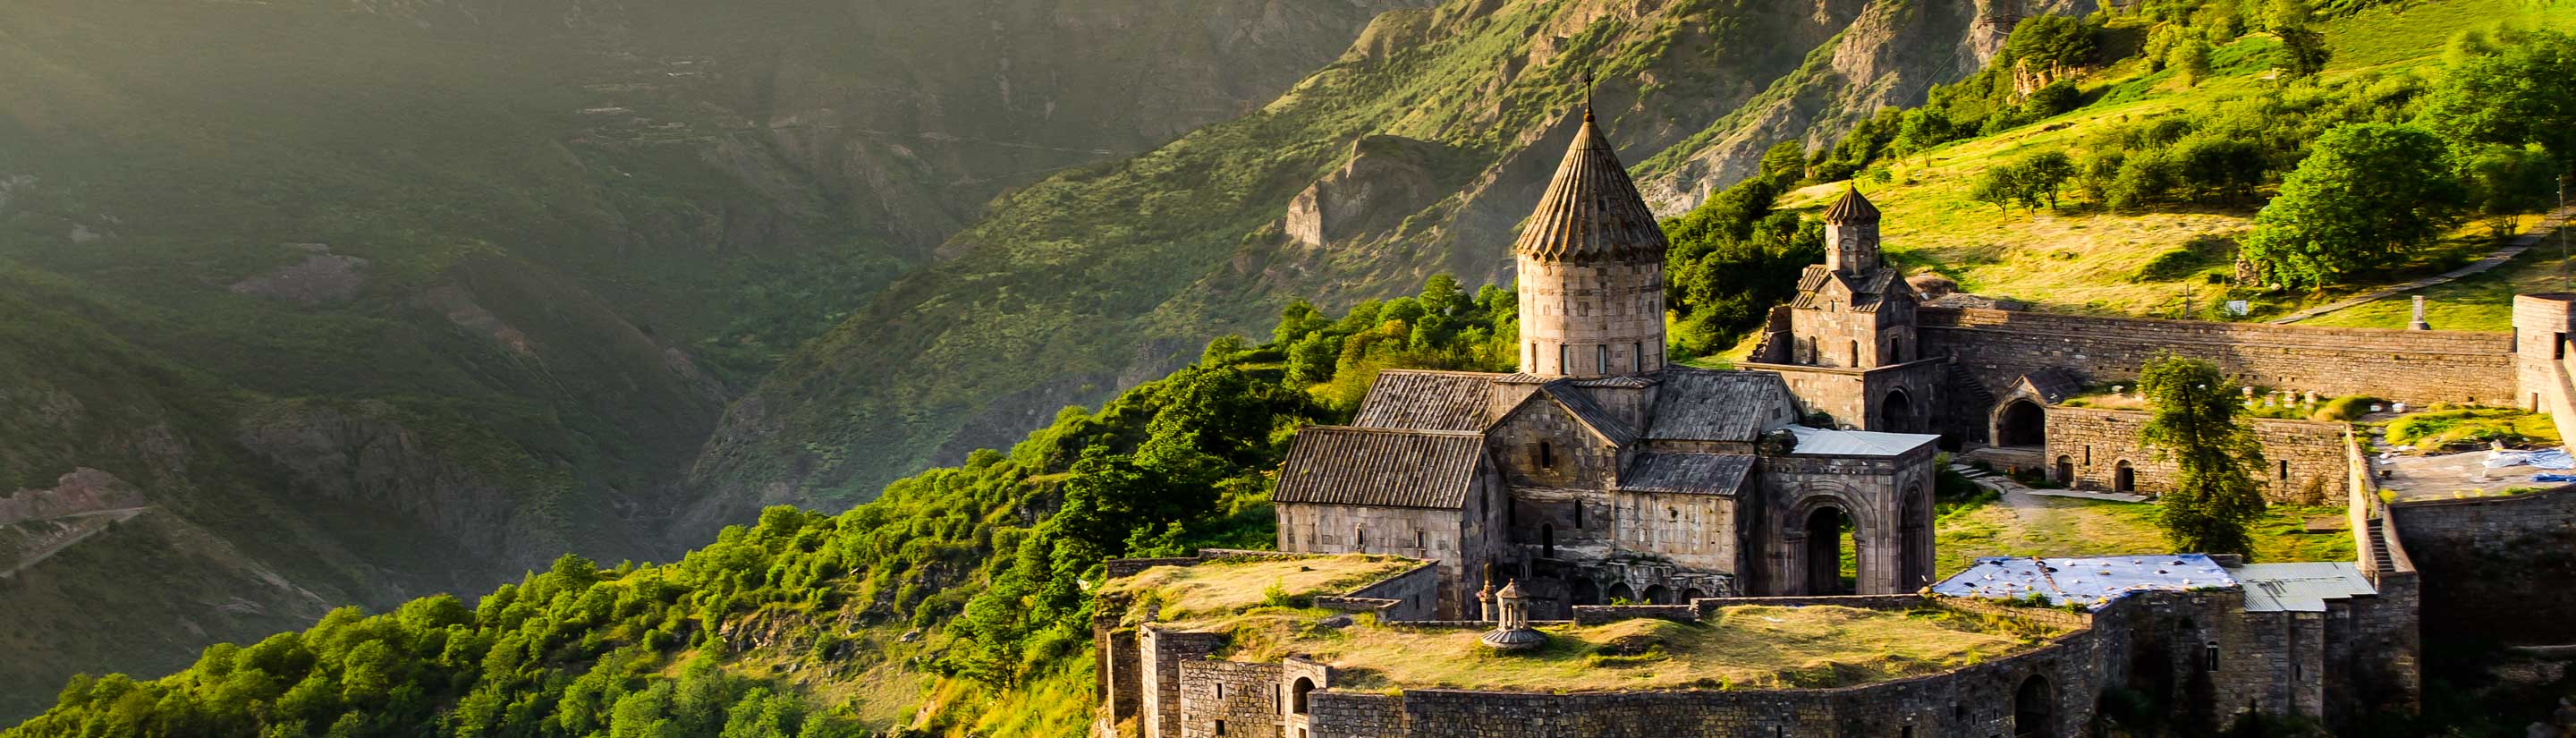 Armenien – Reise in den Kaukasus 